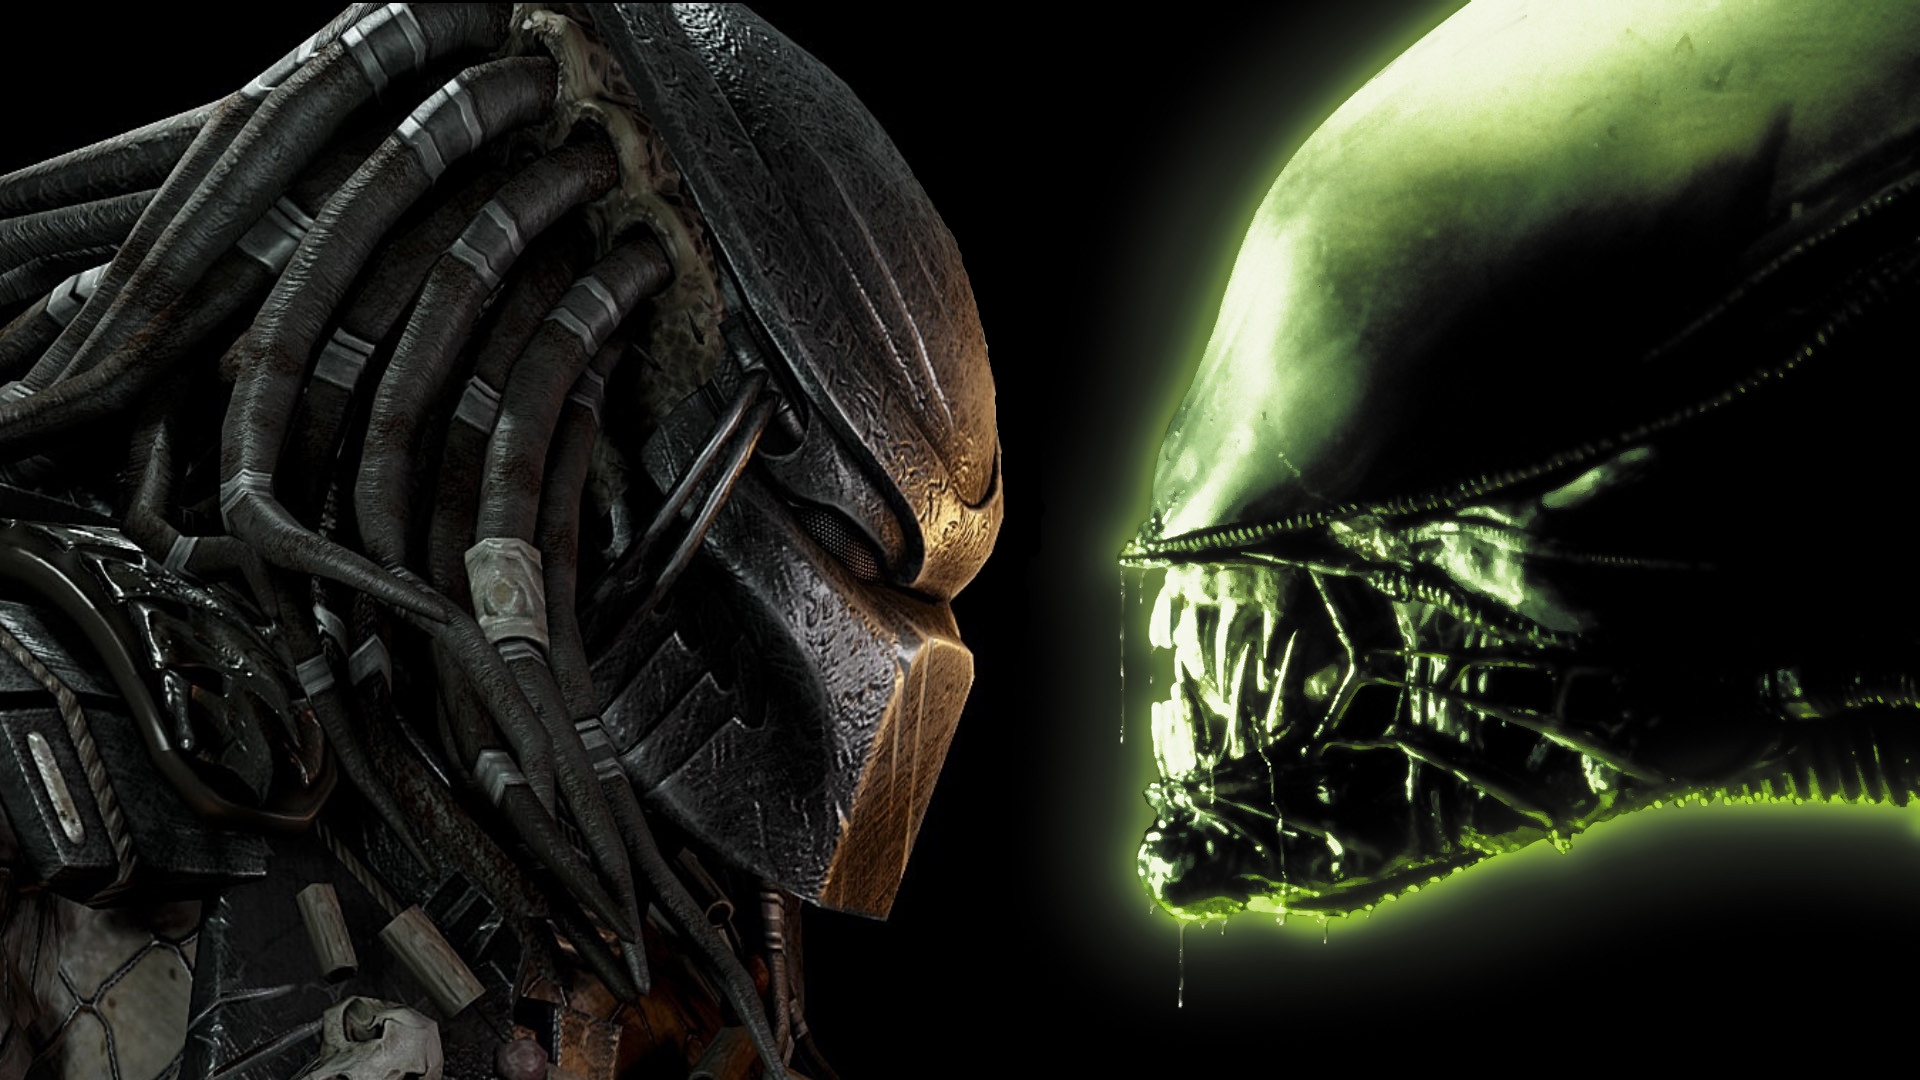 Alien vs predator vs humans  Alien vs predator, Alien vs